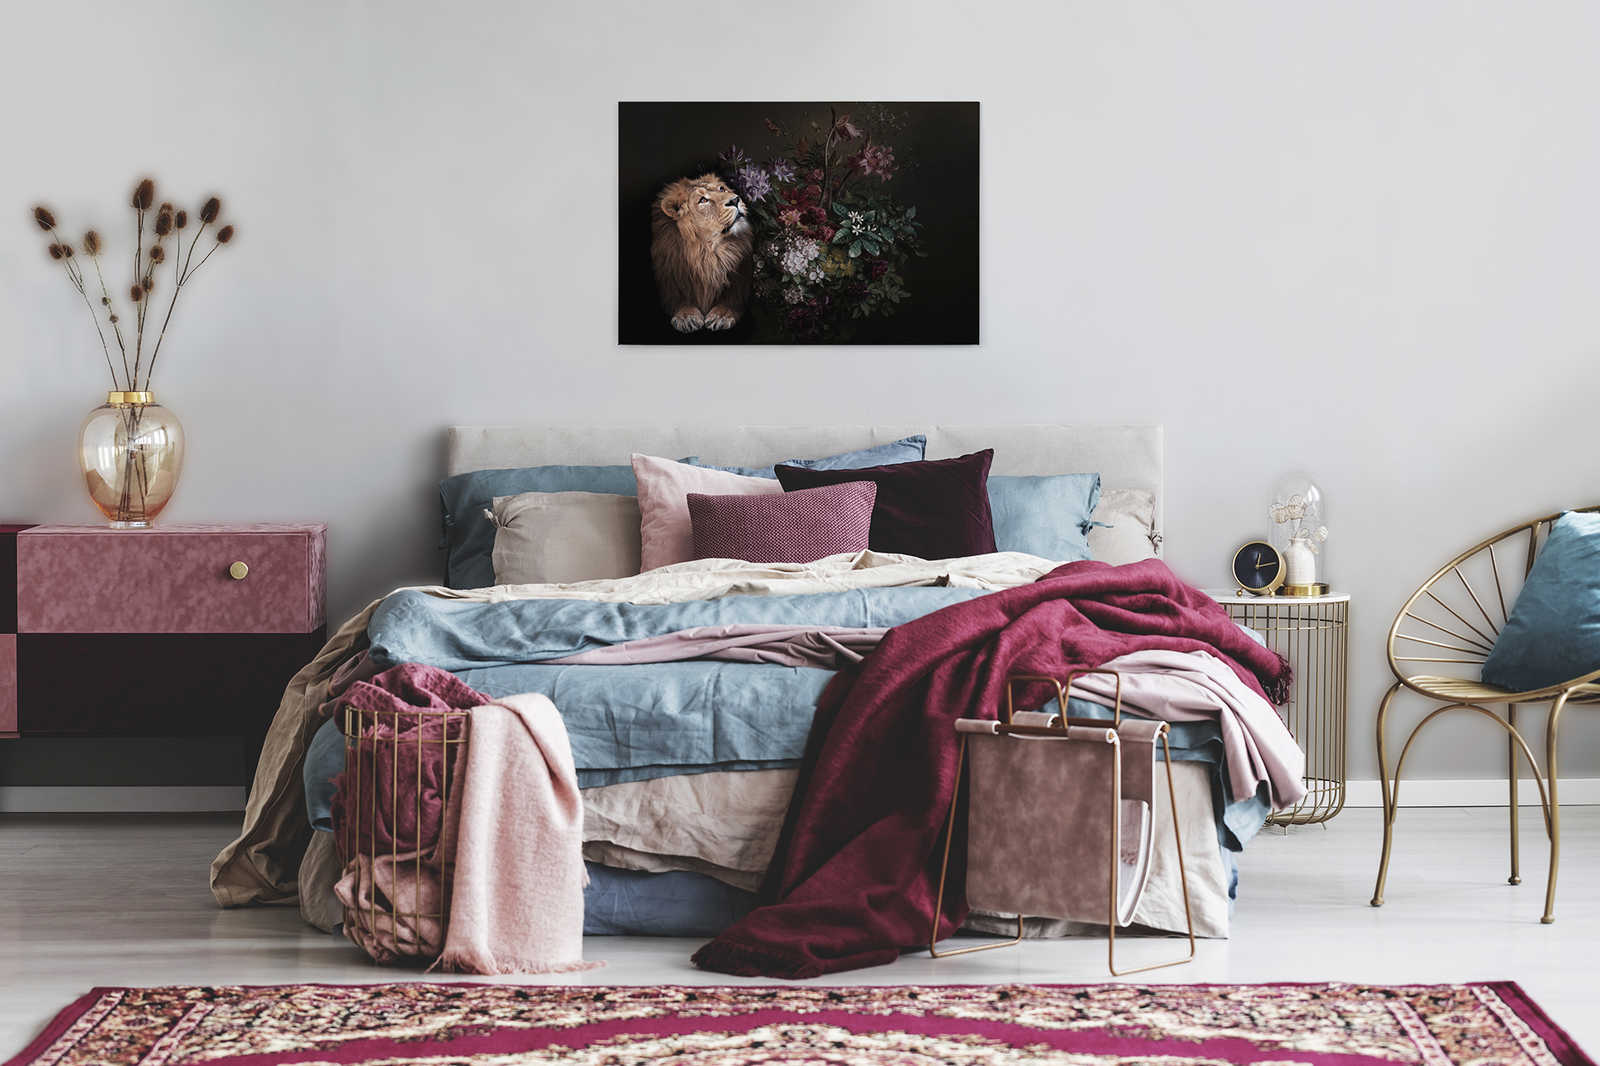             Quadro su tela Ritratto di leone con fiori - 0,90 m x 0,60 m
        